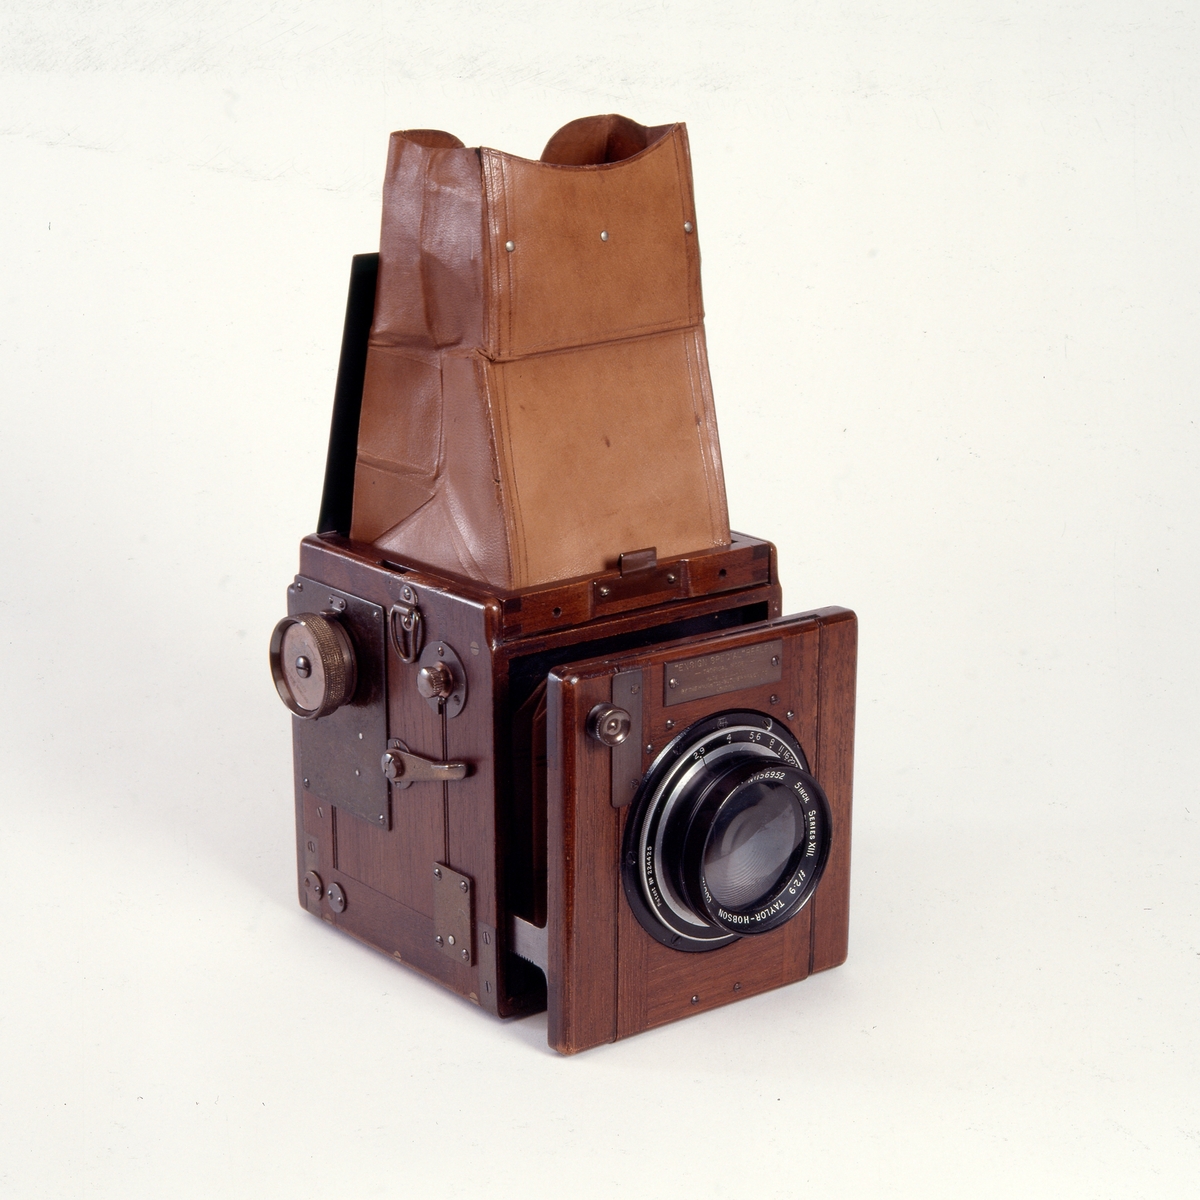 Ensign Special Reflex - Tropical Model er et enøyd speilreflekskamera for platestørrelse 6 x 9 cm. Kameraet ble produsert på 1930-tallet av Houghton-Butcher. Det ligner den vanlige Ensign Special Reflex, men er produsert i teak, messing og russisk lær.
Kameraet er utstyrt med et Taylor-Hobson Cooke Anastigamnat objektiv.